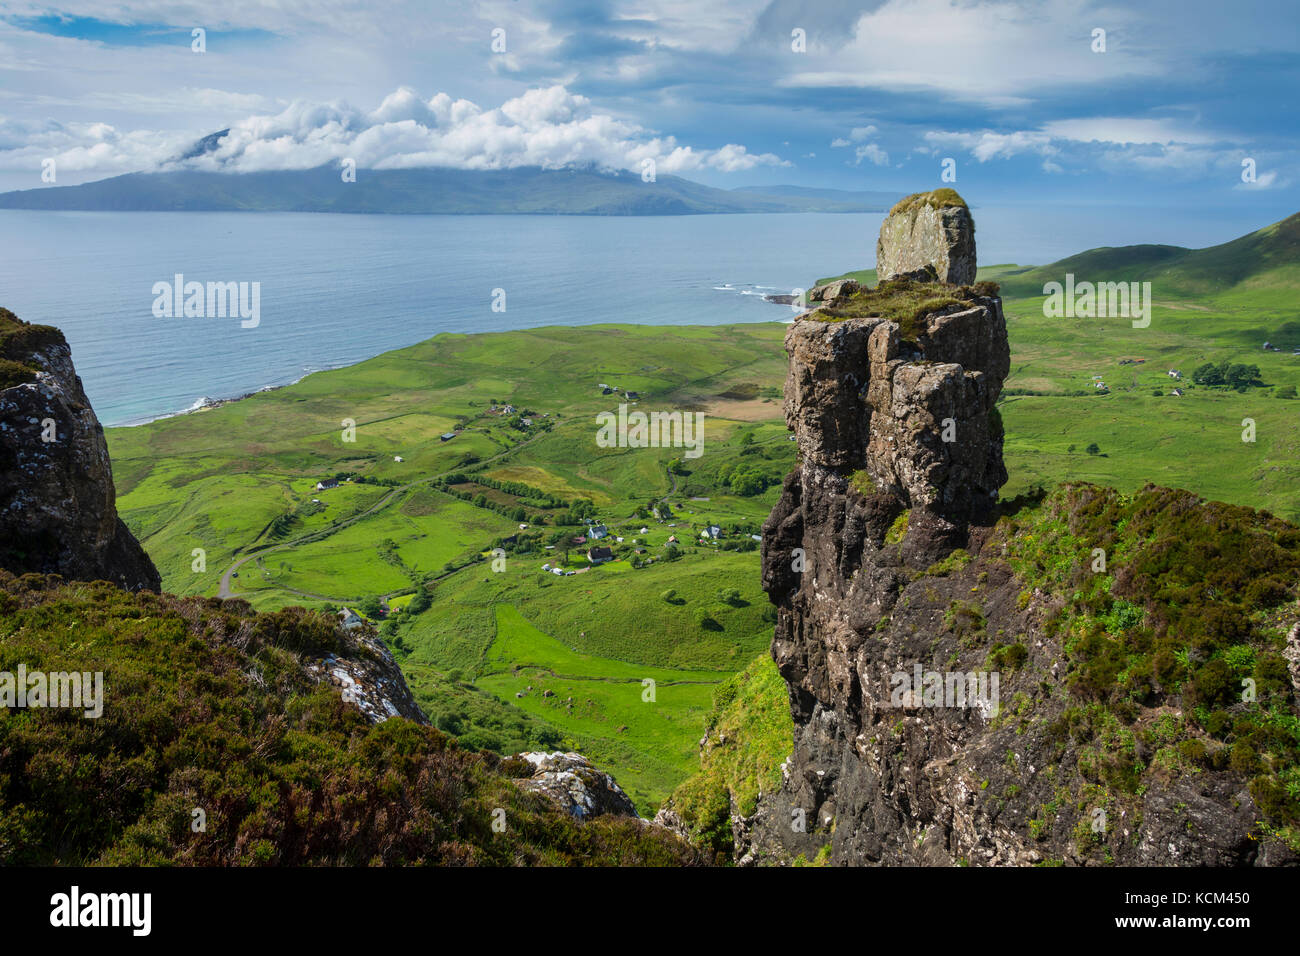 L'île de Rum du sommet de Bidean an Tighearna (le doigt de Dieu) sur le bord ouest du plateau Beinn Bhuidhe, île d'Eigg, Ecosse, Royaume-Uni Banque D'Images